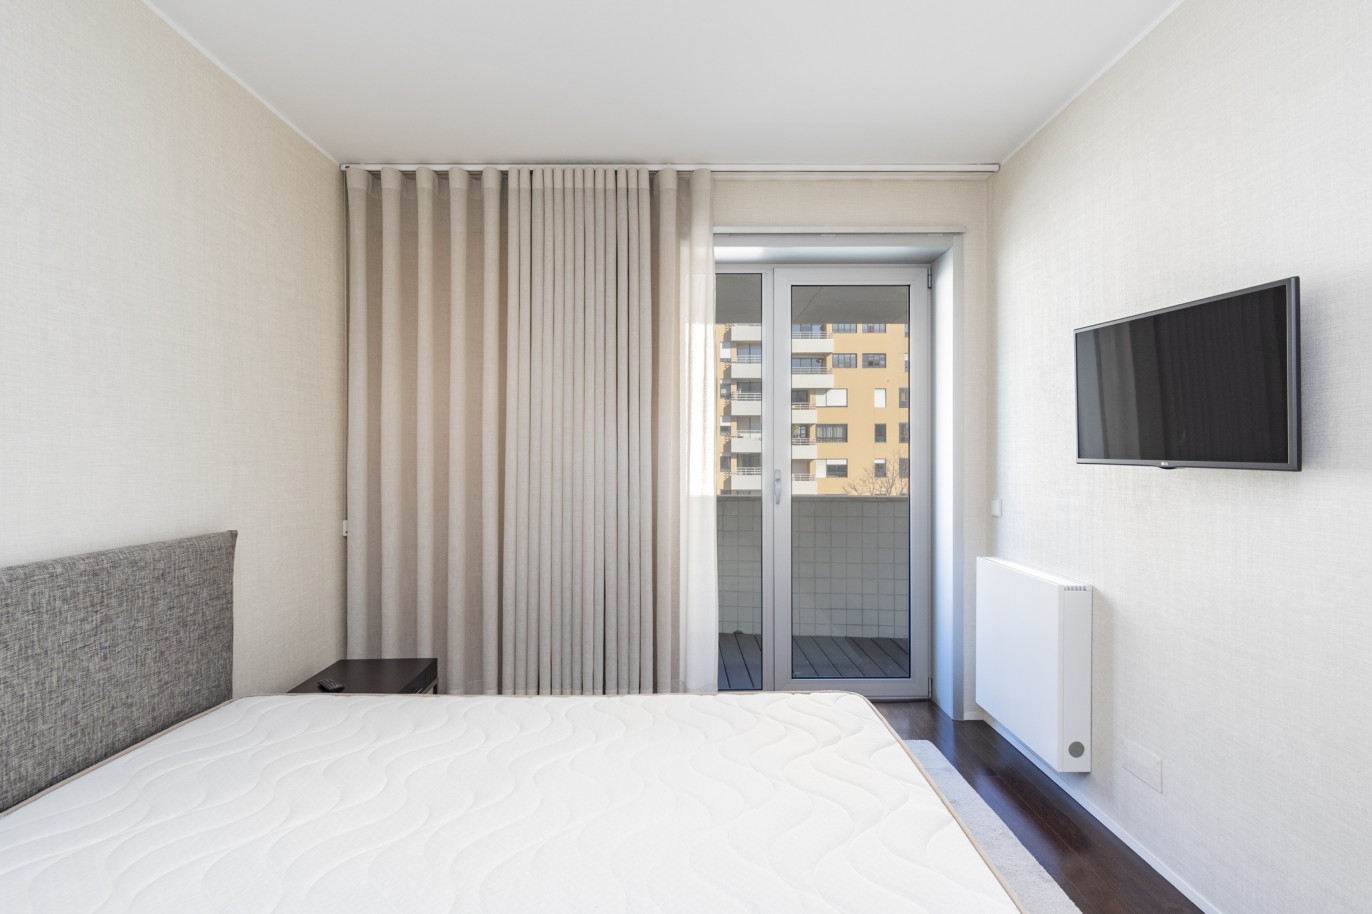 3 Bedroom Duplex Apartment with balcony, for sale, in Boavista, Porto, Portugal_217714